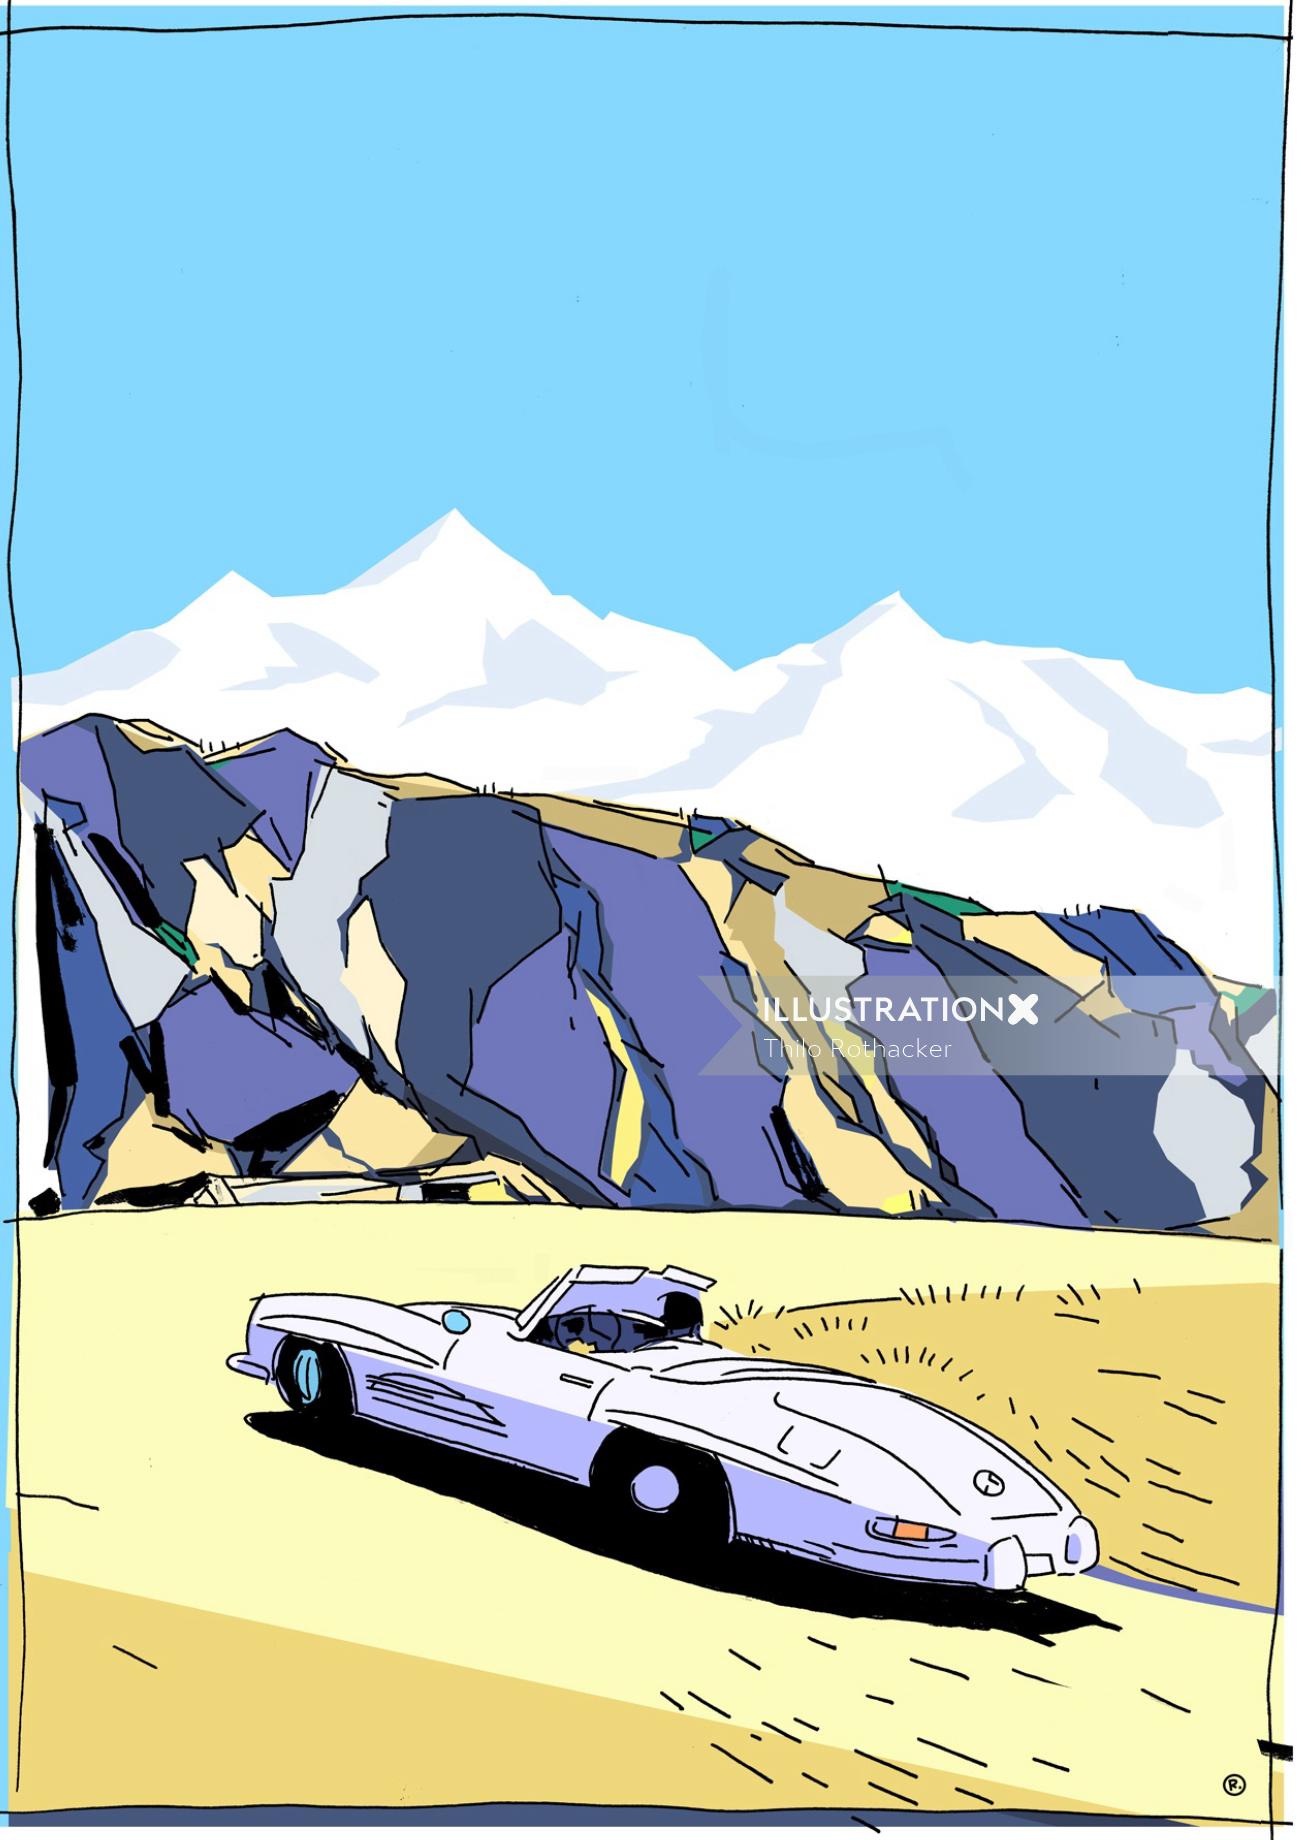 图形驾驶汽车在山上